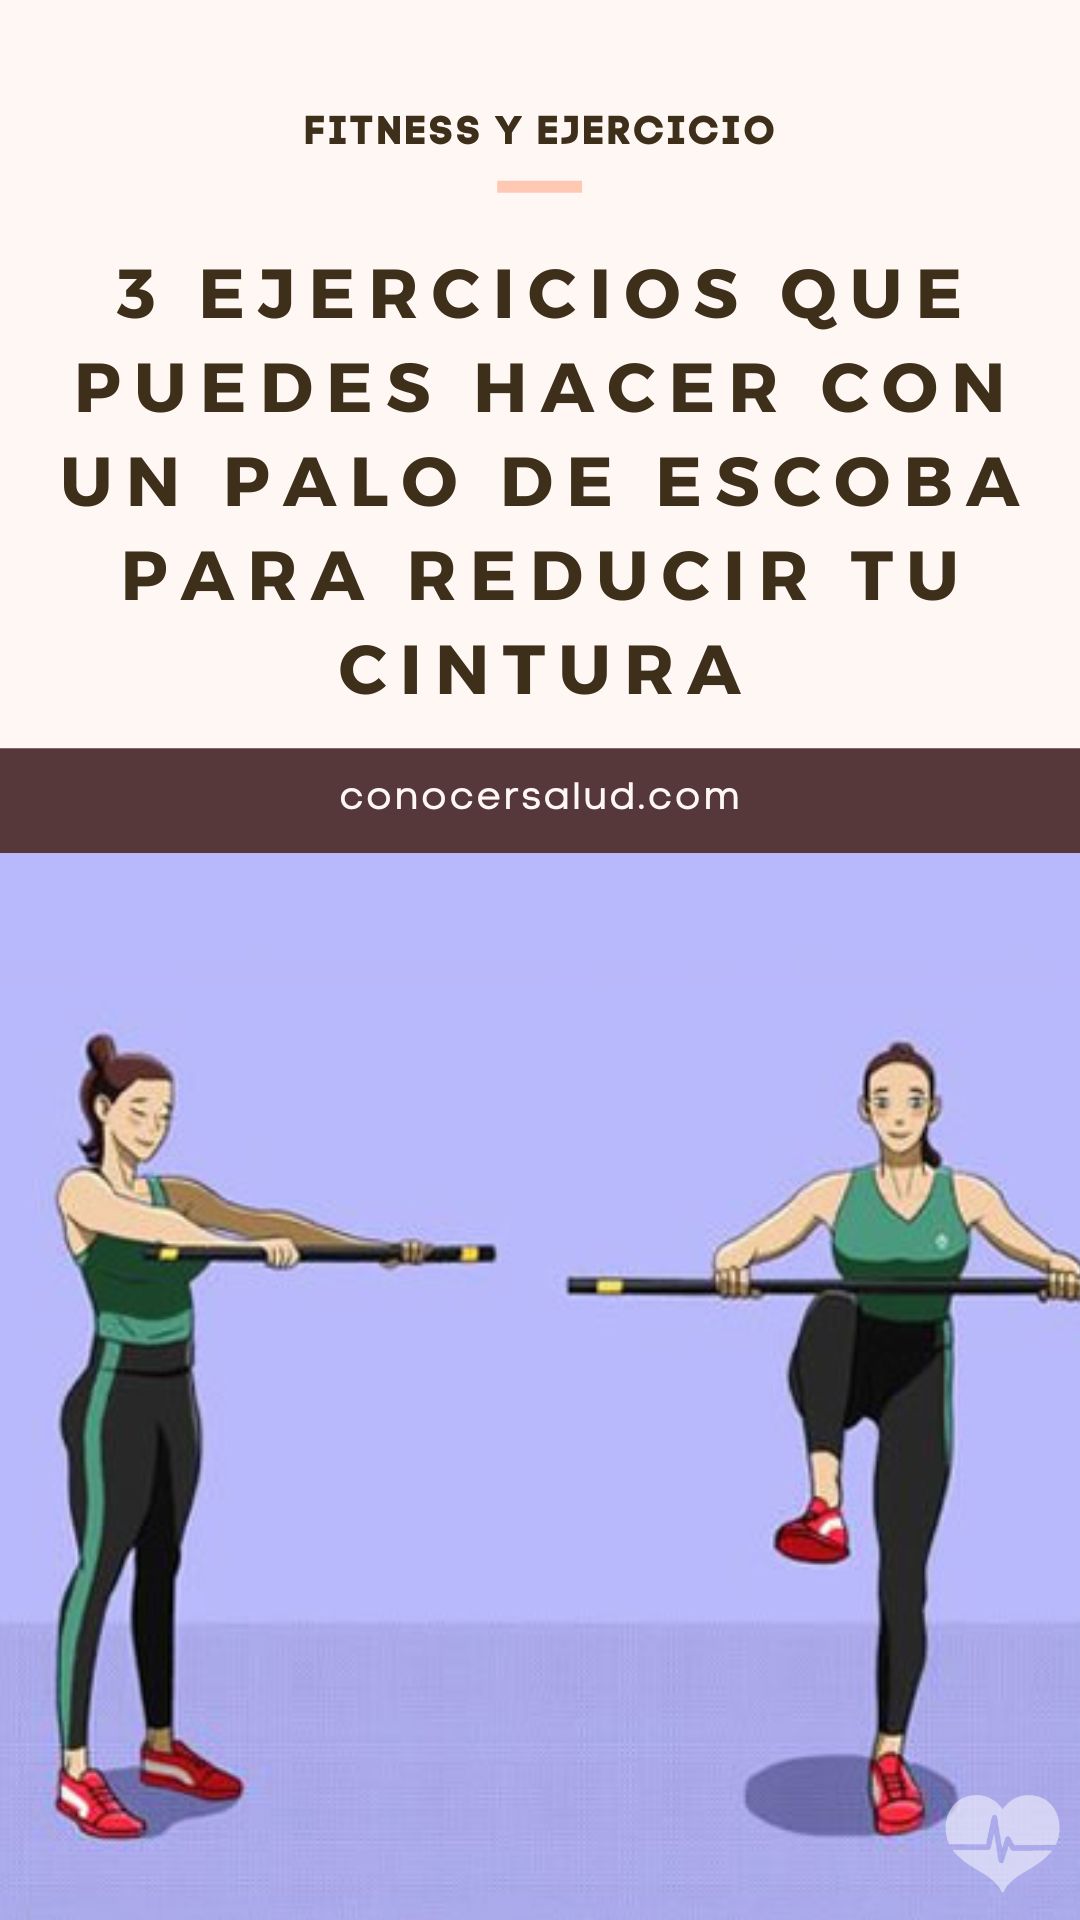 3 ejercicios que puedes hacer con un palo de escoba para reducir tu cintura